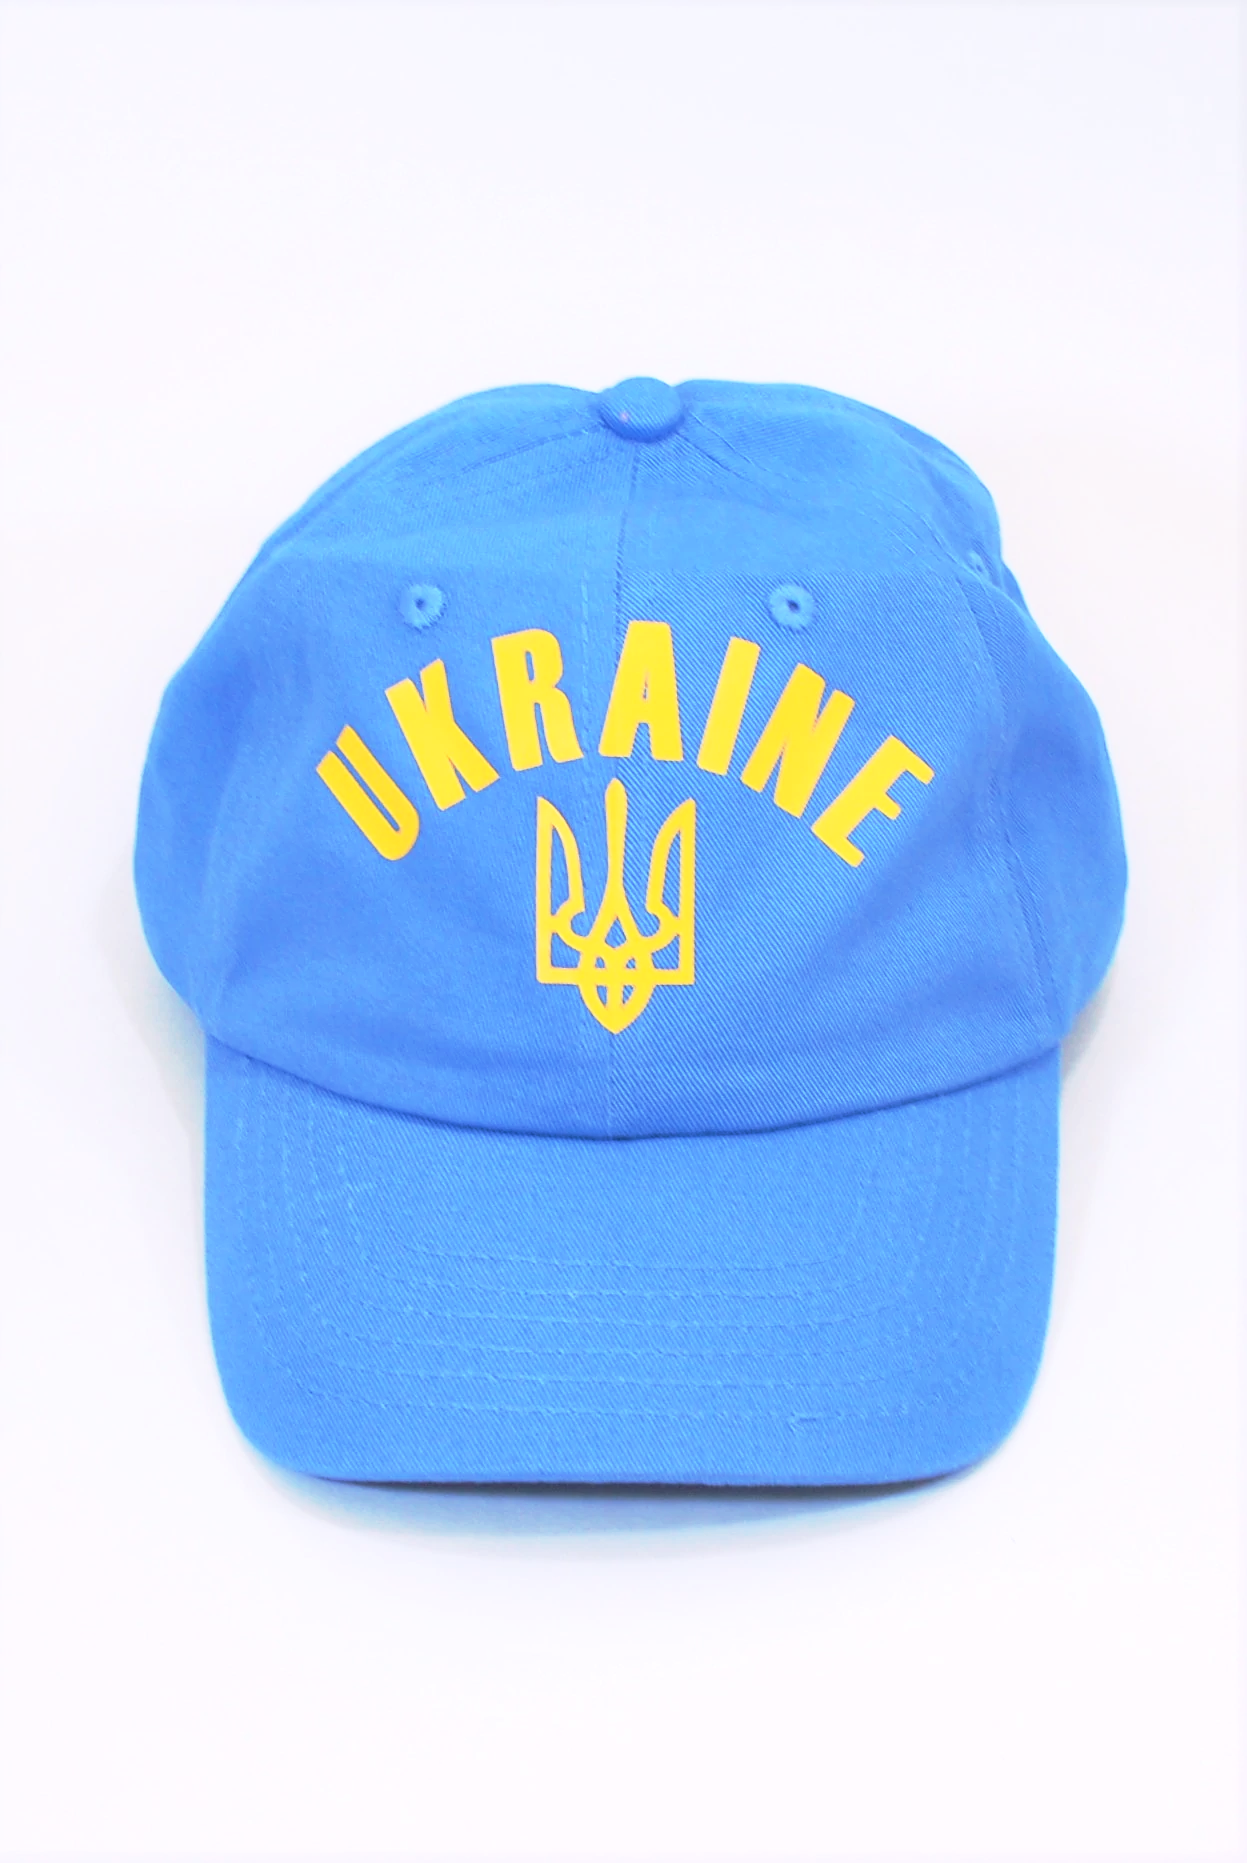 Baseball cap "Ukraine" Light blue